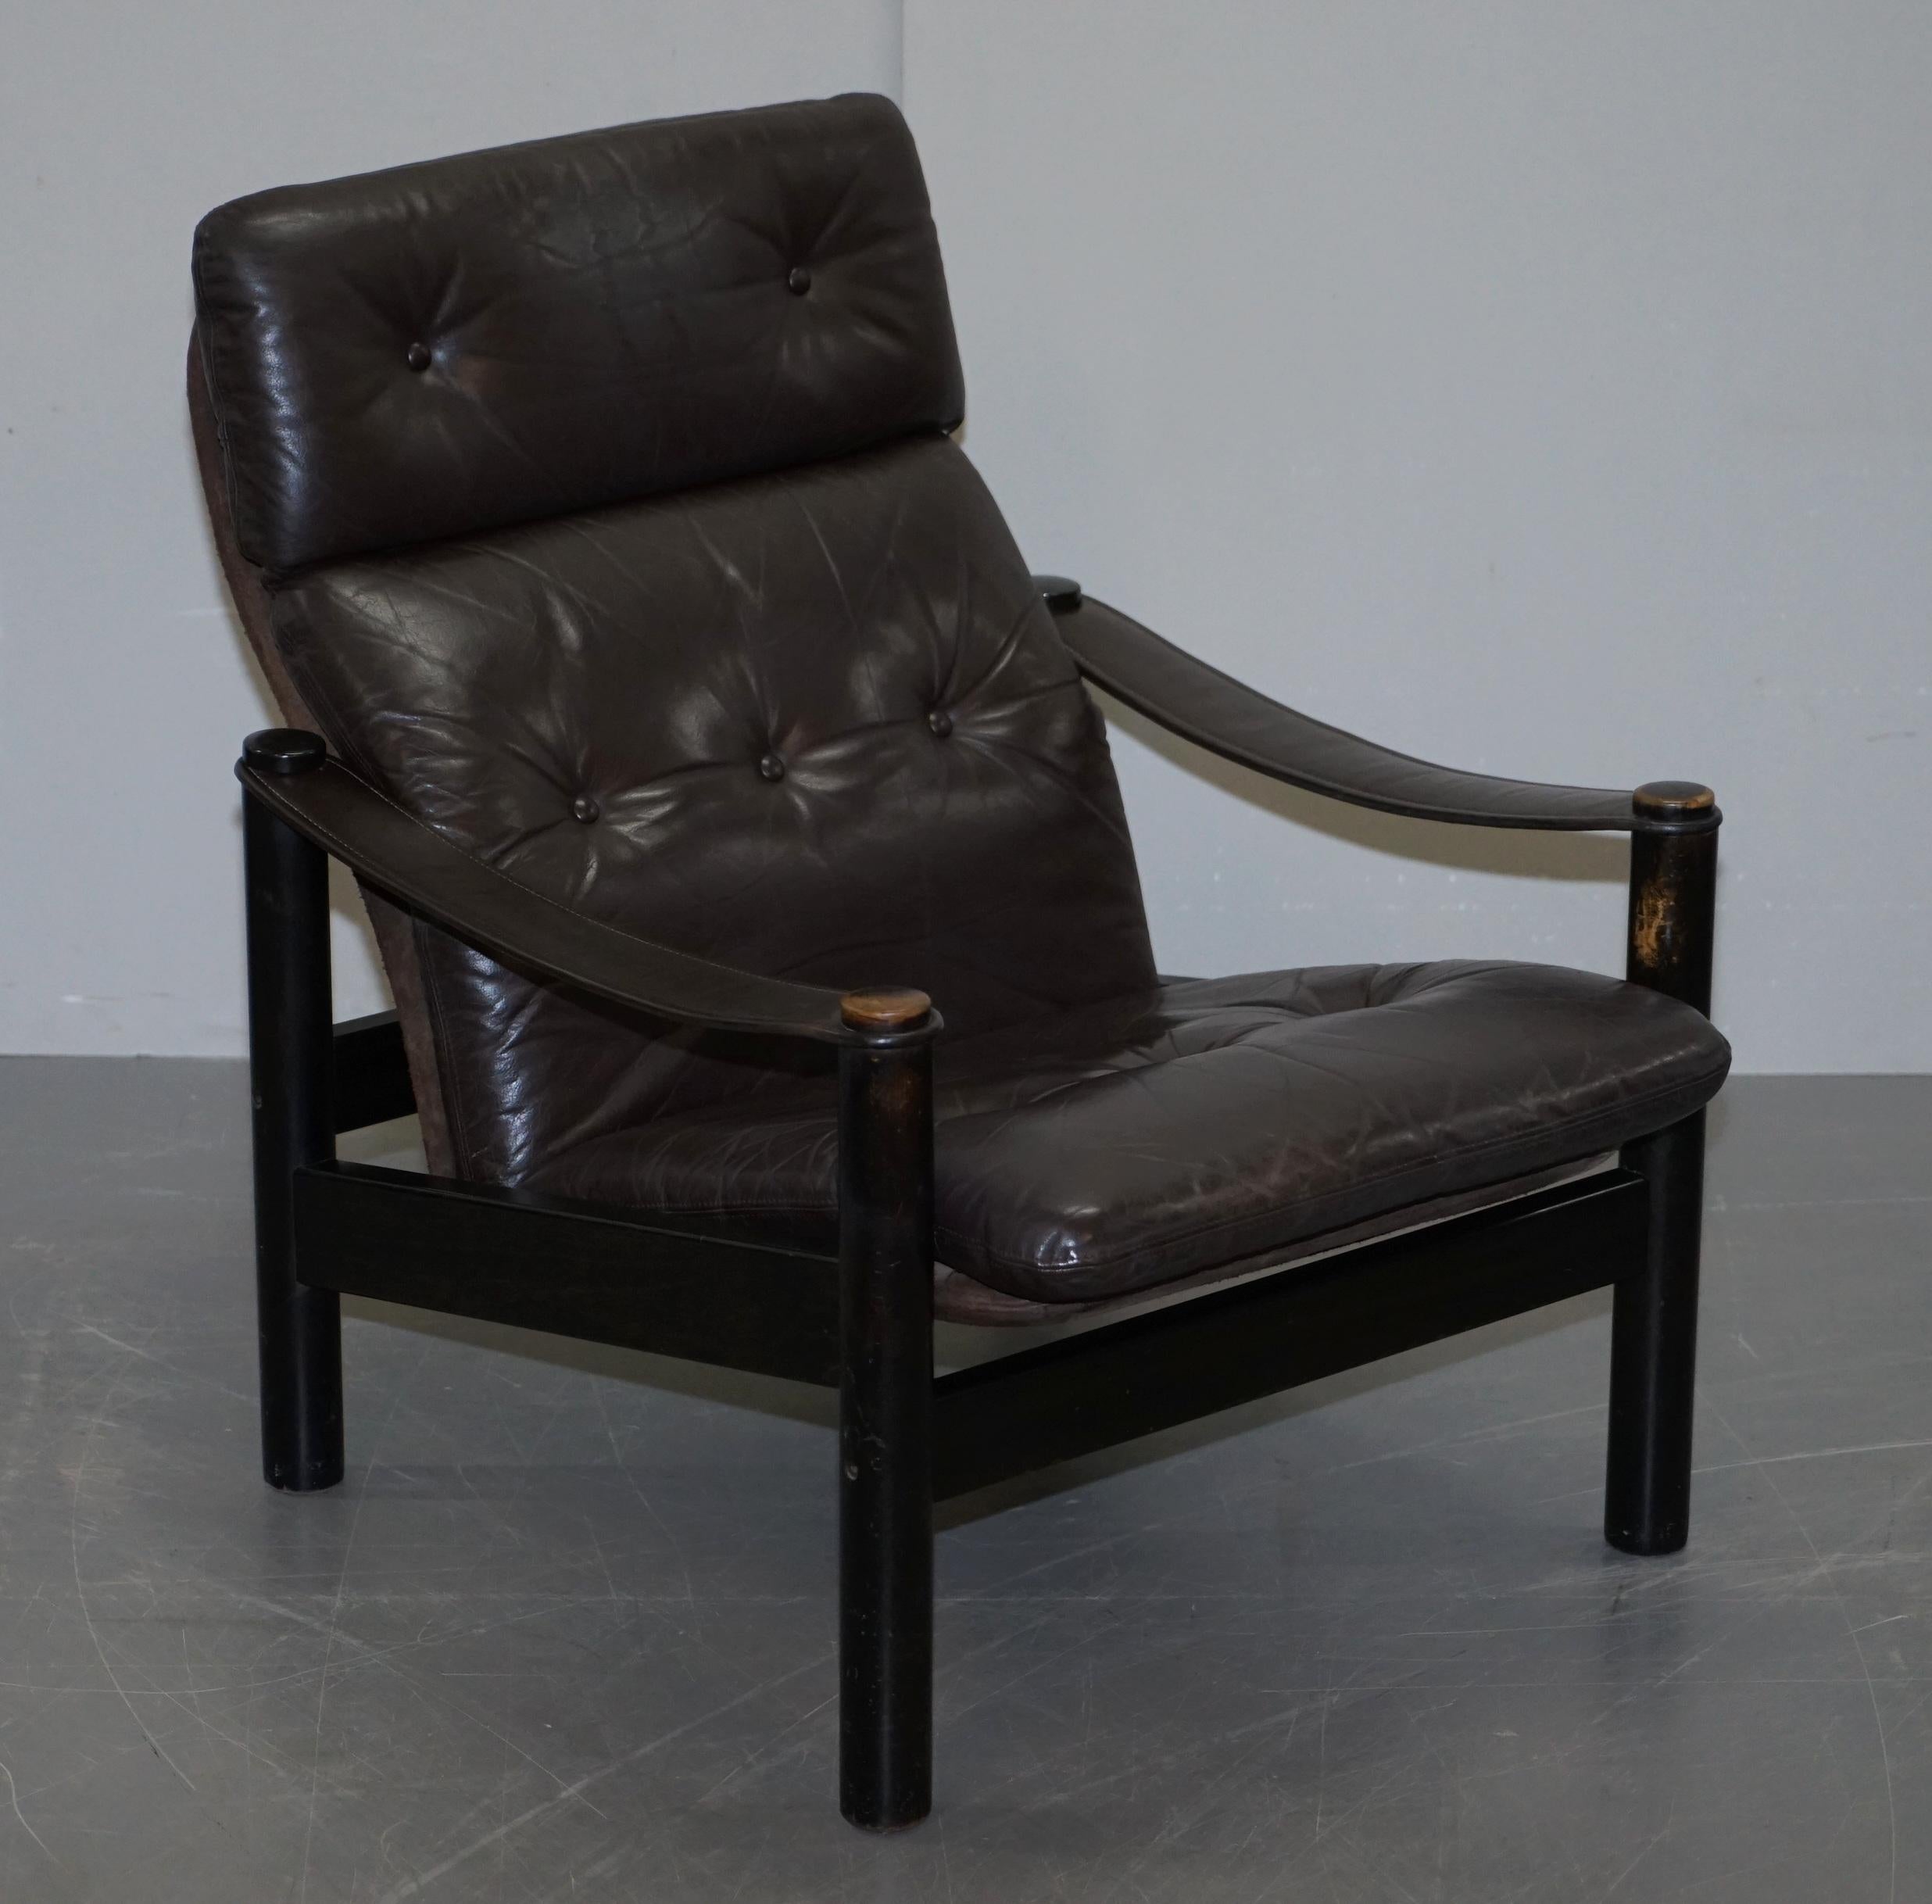 Nous sommes ravis d'offrir à la vente cet ensemble original de fauteuil et ottoman en cuir marron avec boutons flottants Chesterfield, datant du milieu du siècle dernier, vers les années 1960.

Une très belle paire, bien fabriquée et, si j'ose